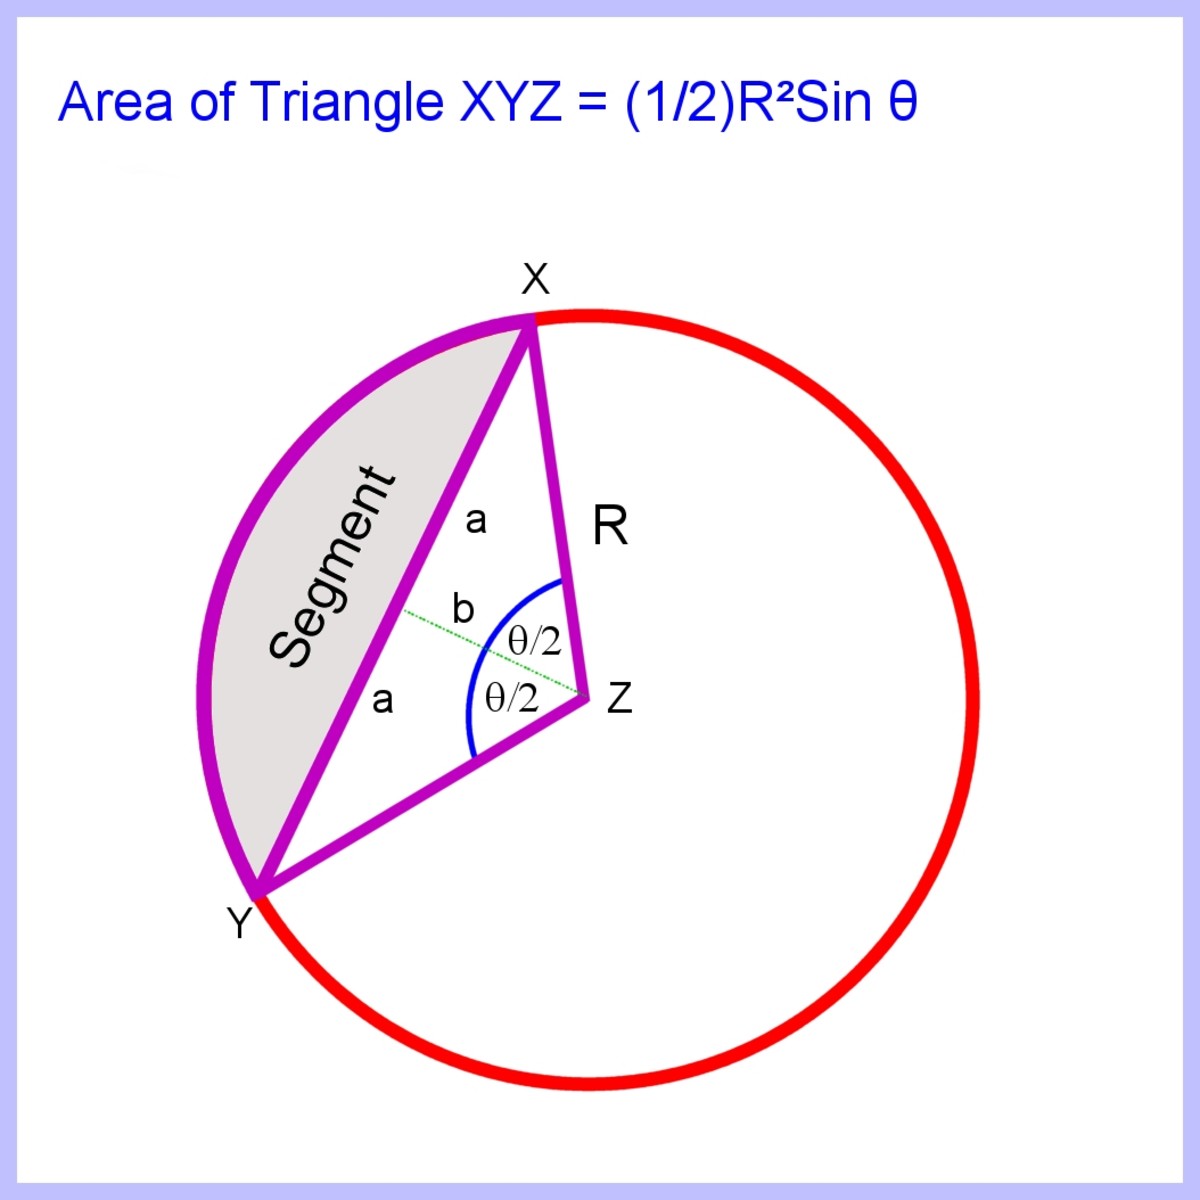 要计算线段的面积，首先计算三角形XYZ的面积，然后从扇形中减去它。